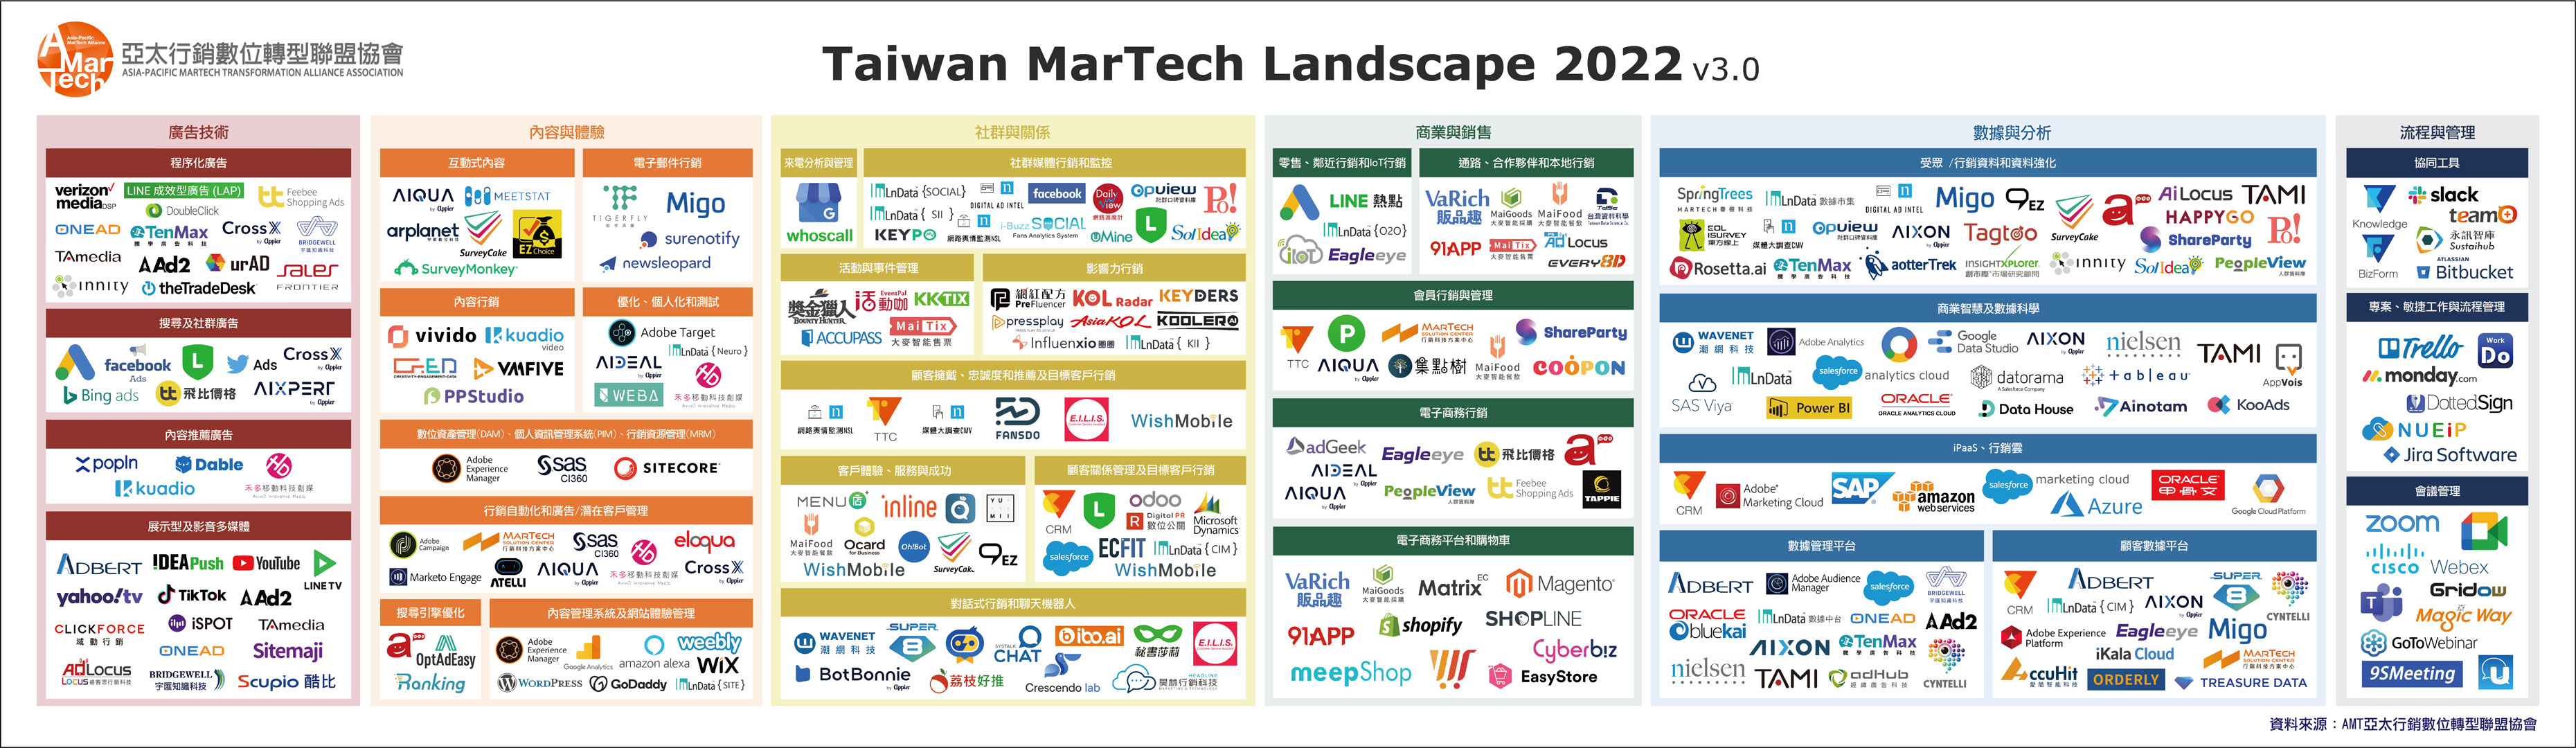 AMT 亞太行銷數位轉型聯盟在 2022 年 3 月發表的「台灣行銷科技版圖 Taiwan Martech Landscape 2022 v3.0」，6 大類別工具總共高達 266 個。